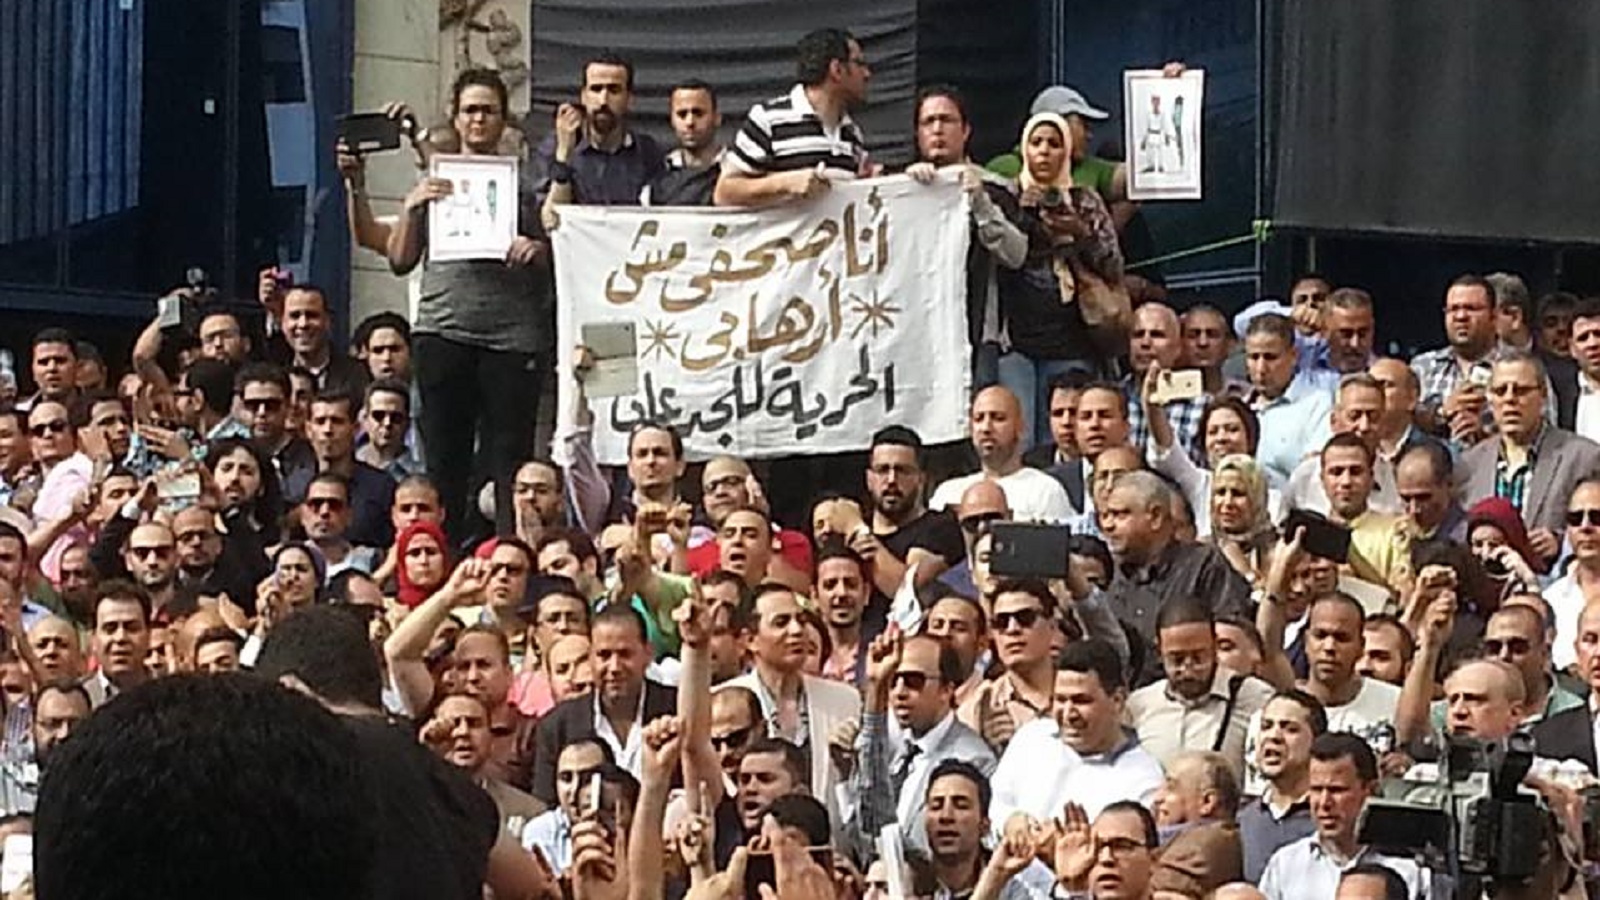 مصر: اعتقالات جديدة لصحافيين نقابيين.. وكفالتهم سُدّدت رغماً عنهم!